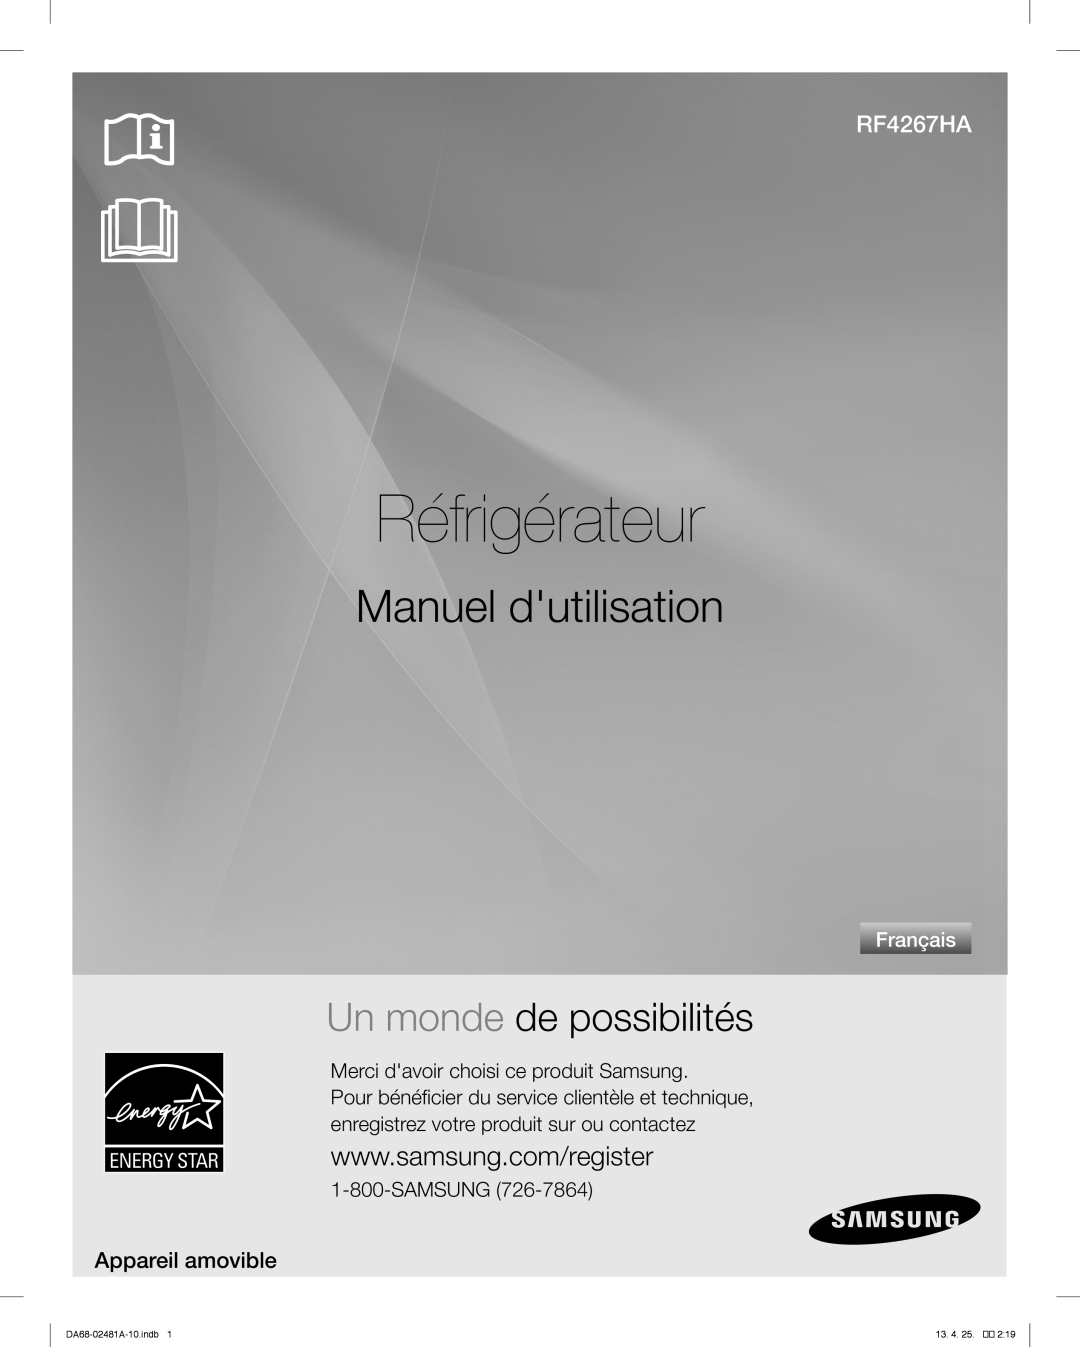 Samsung RF4267HABP Réfrigérateur, Manuel dutilisation, Un monde de possibilités, Appareil amovible, Français, Samsung 